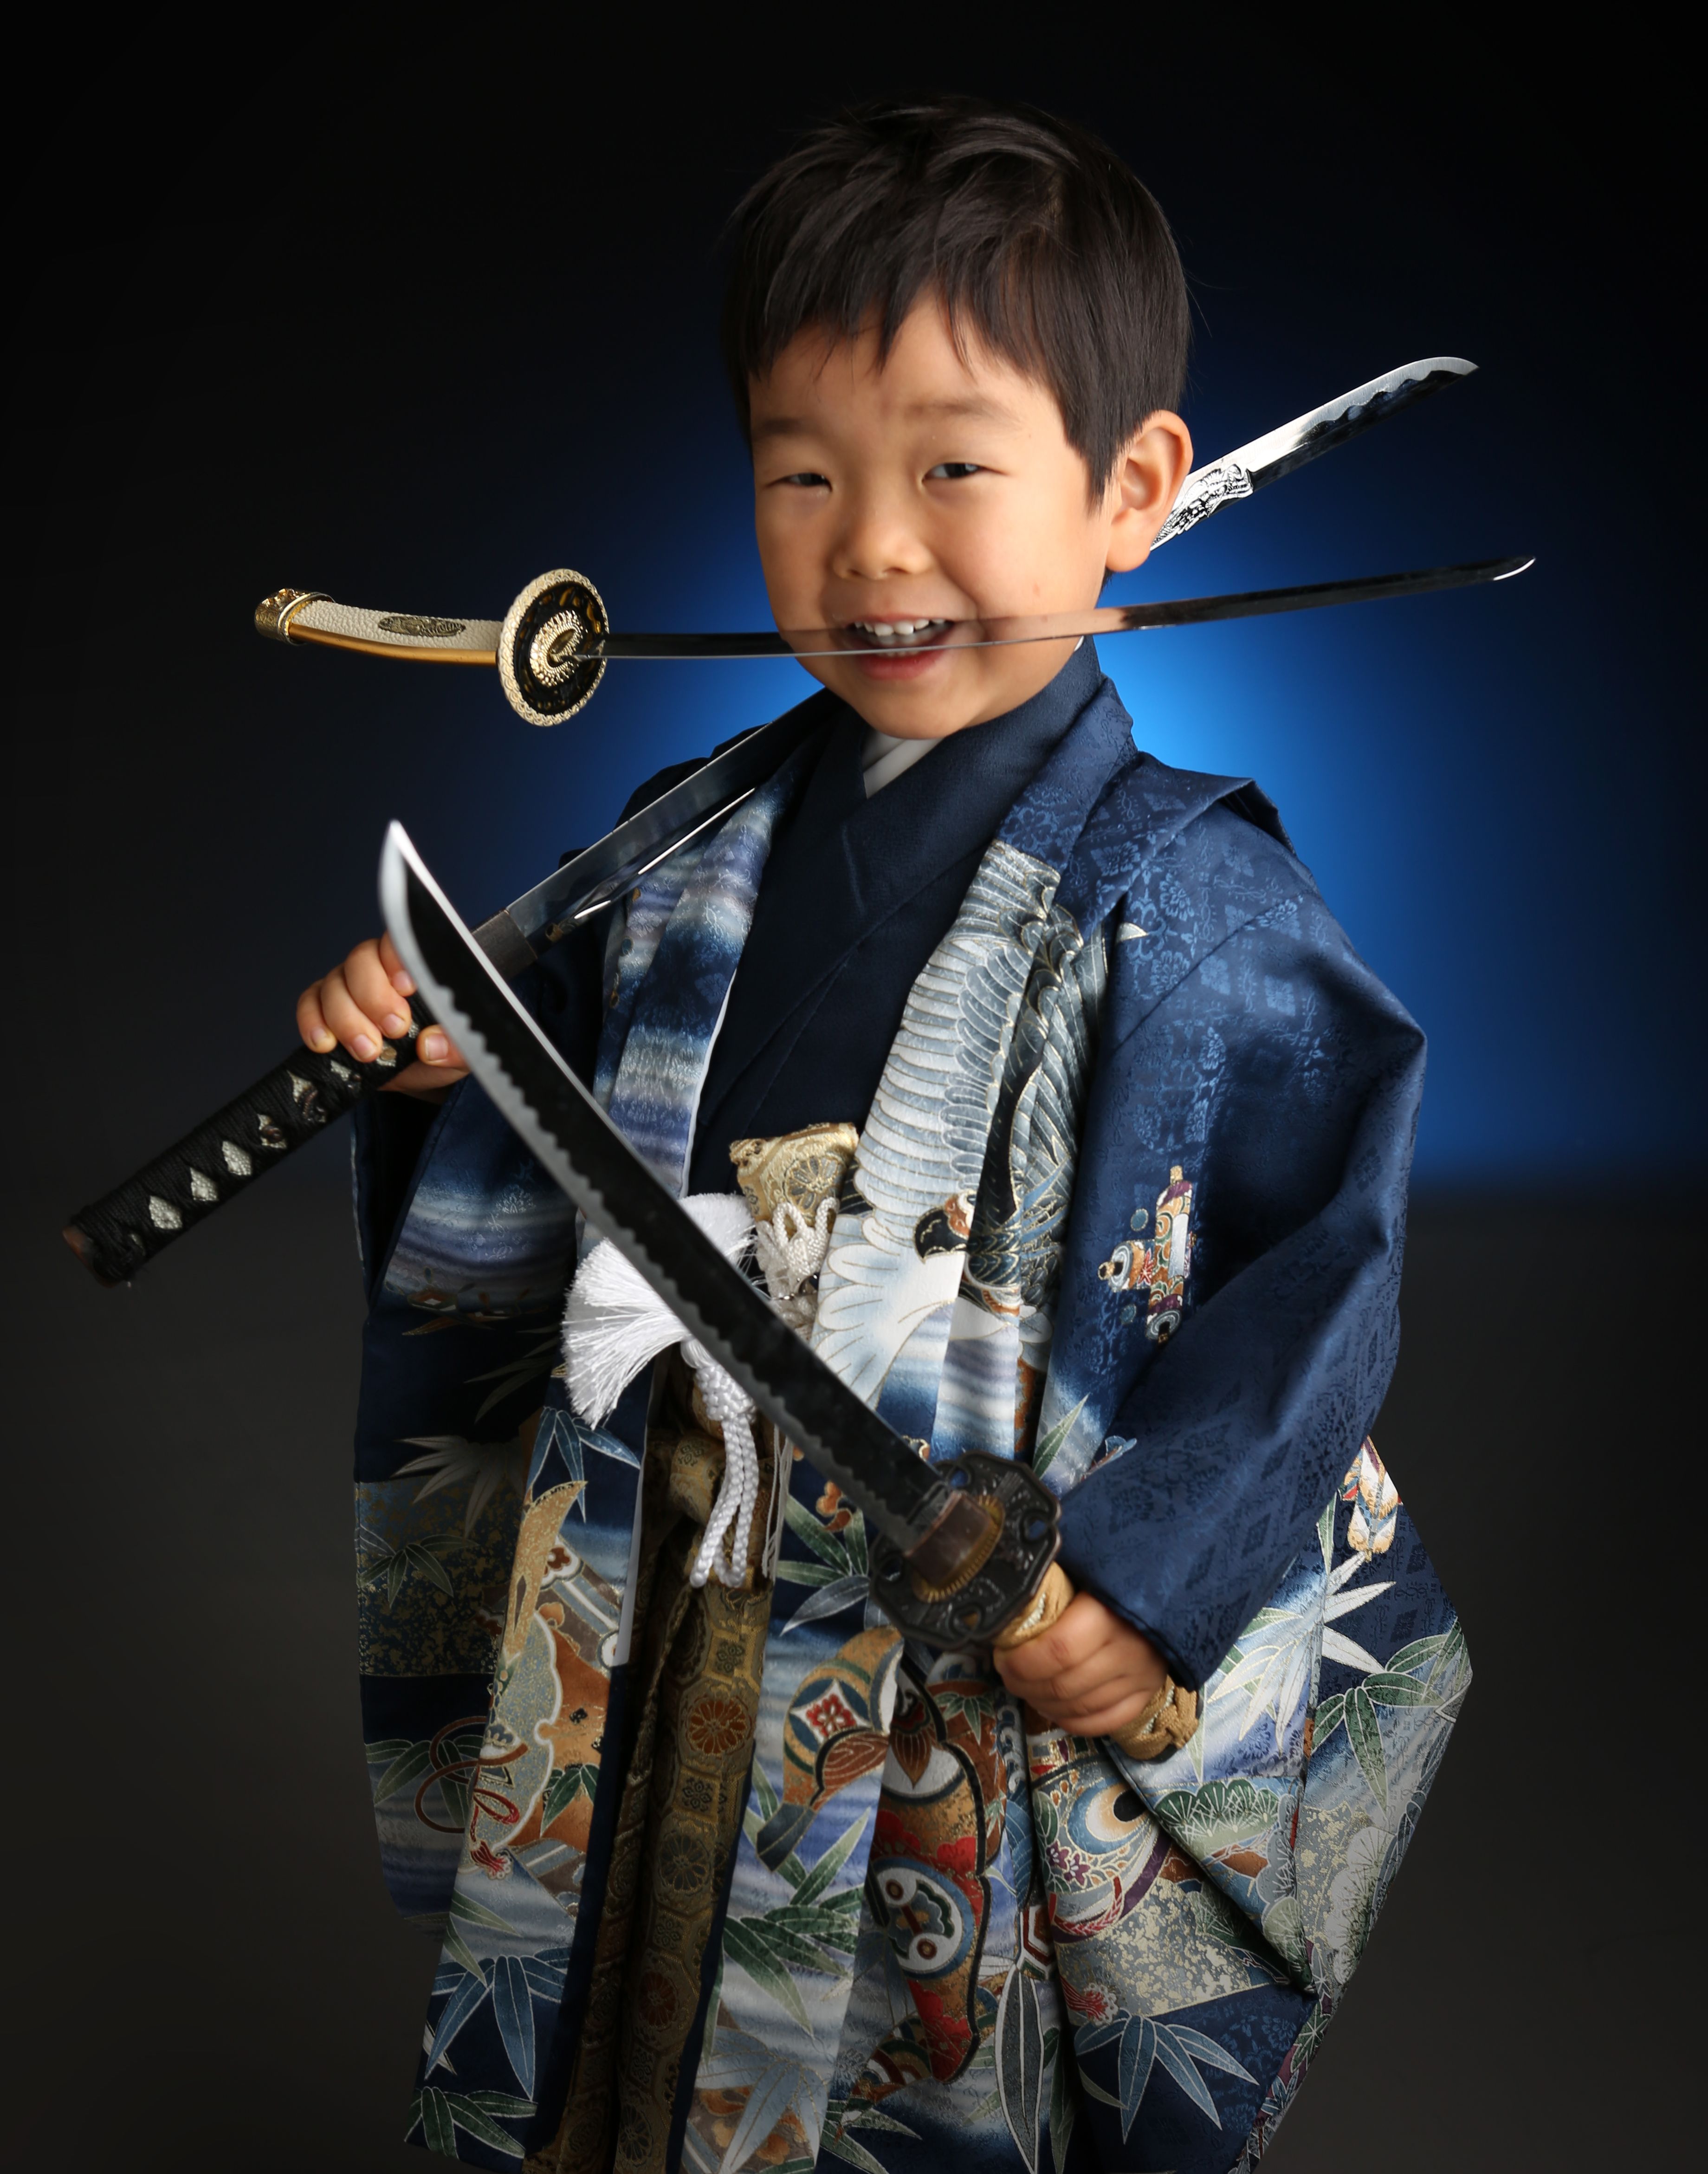 キリッ にこっ 11種の刀の構え方 江戸川区の写真館スタジオタカノ